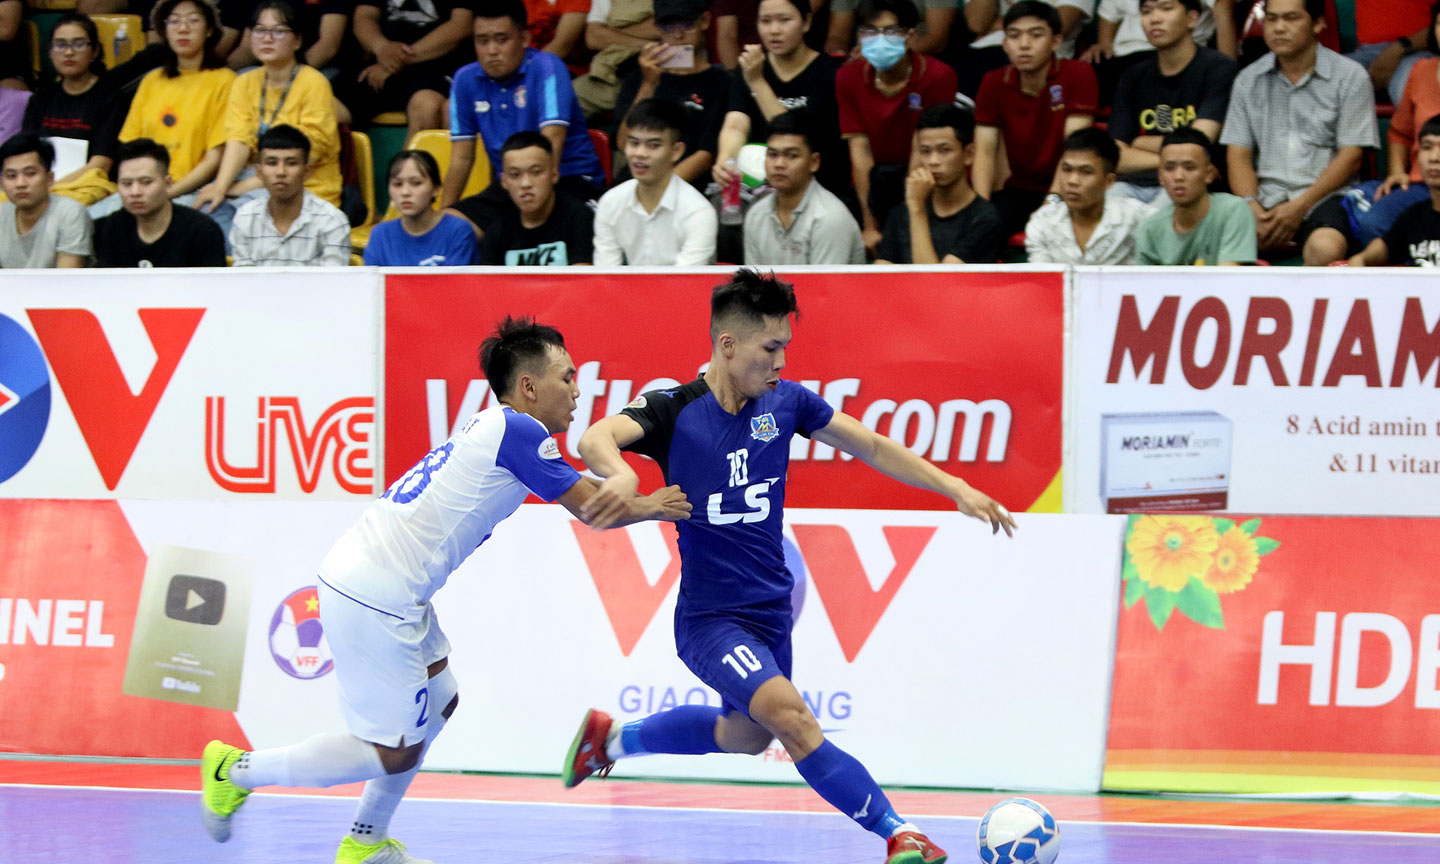 Trận đấu chiều ngày 4-10 của Giải Futsal HDBank vô địch quốc gia 2020 đang được người hâm mộ quan tâm theo dõi.